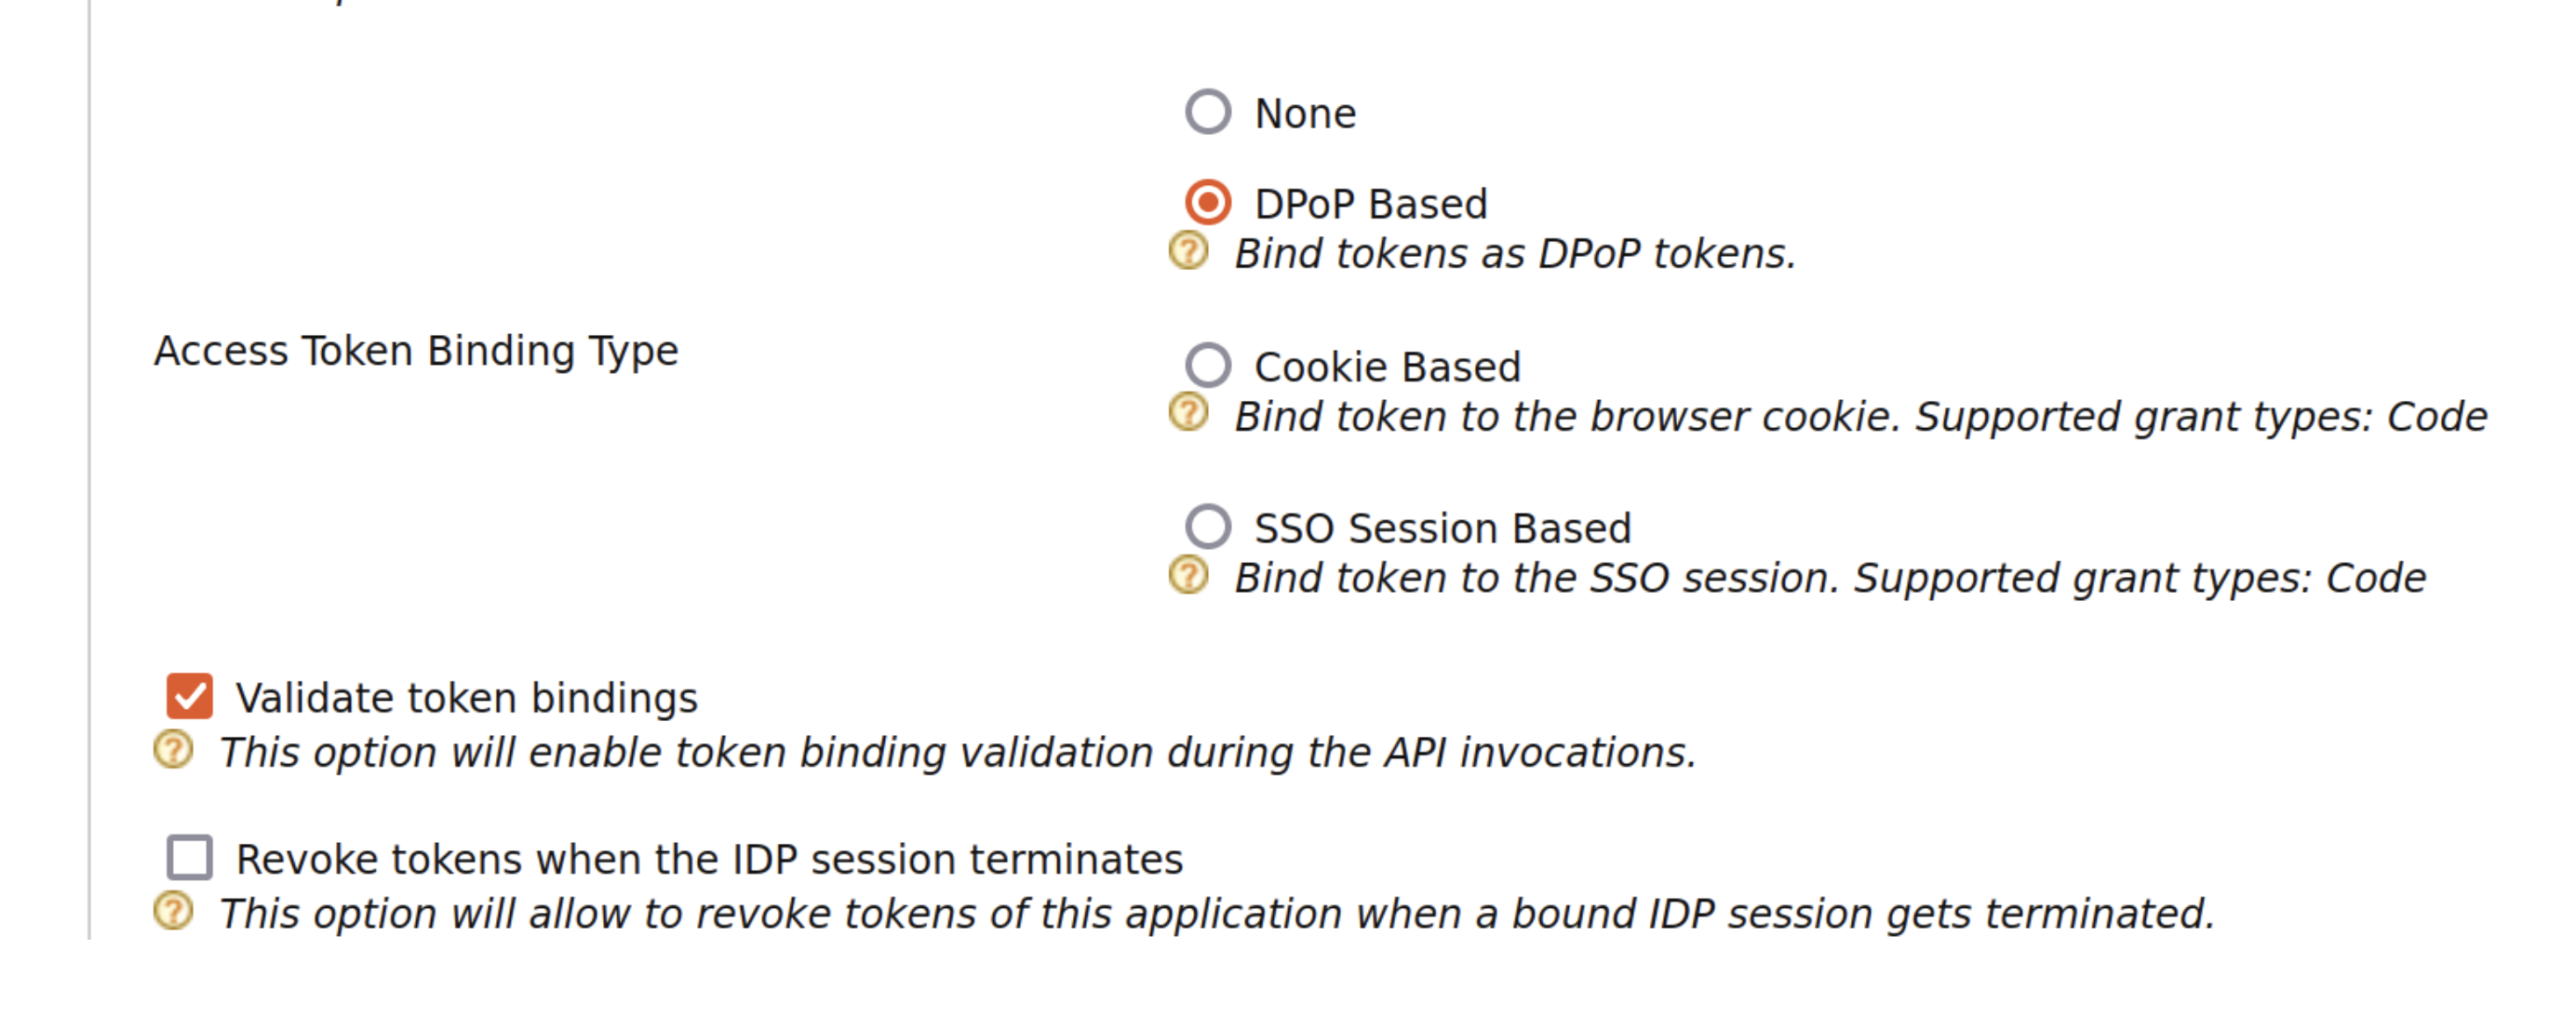 DPoP based token binding